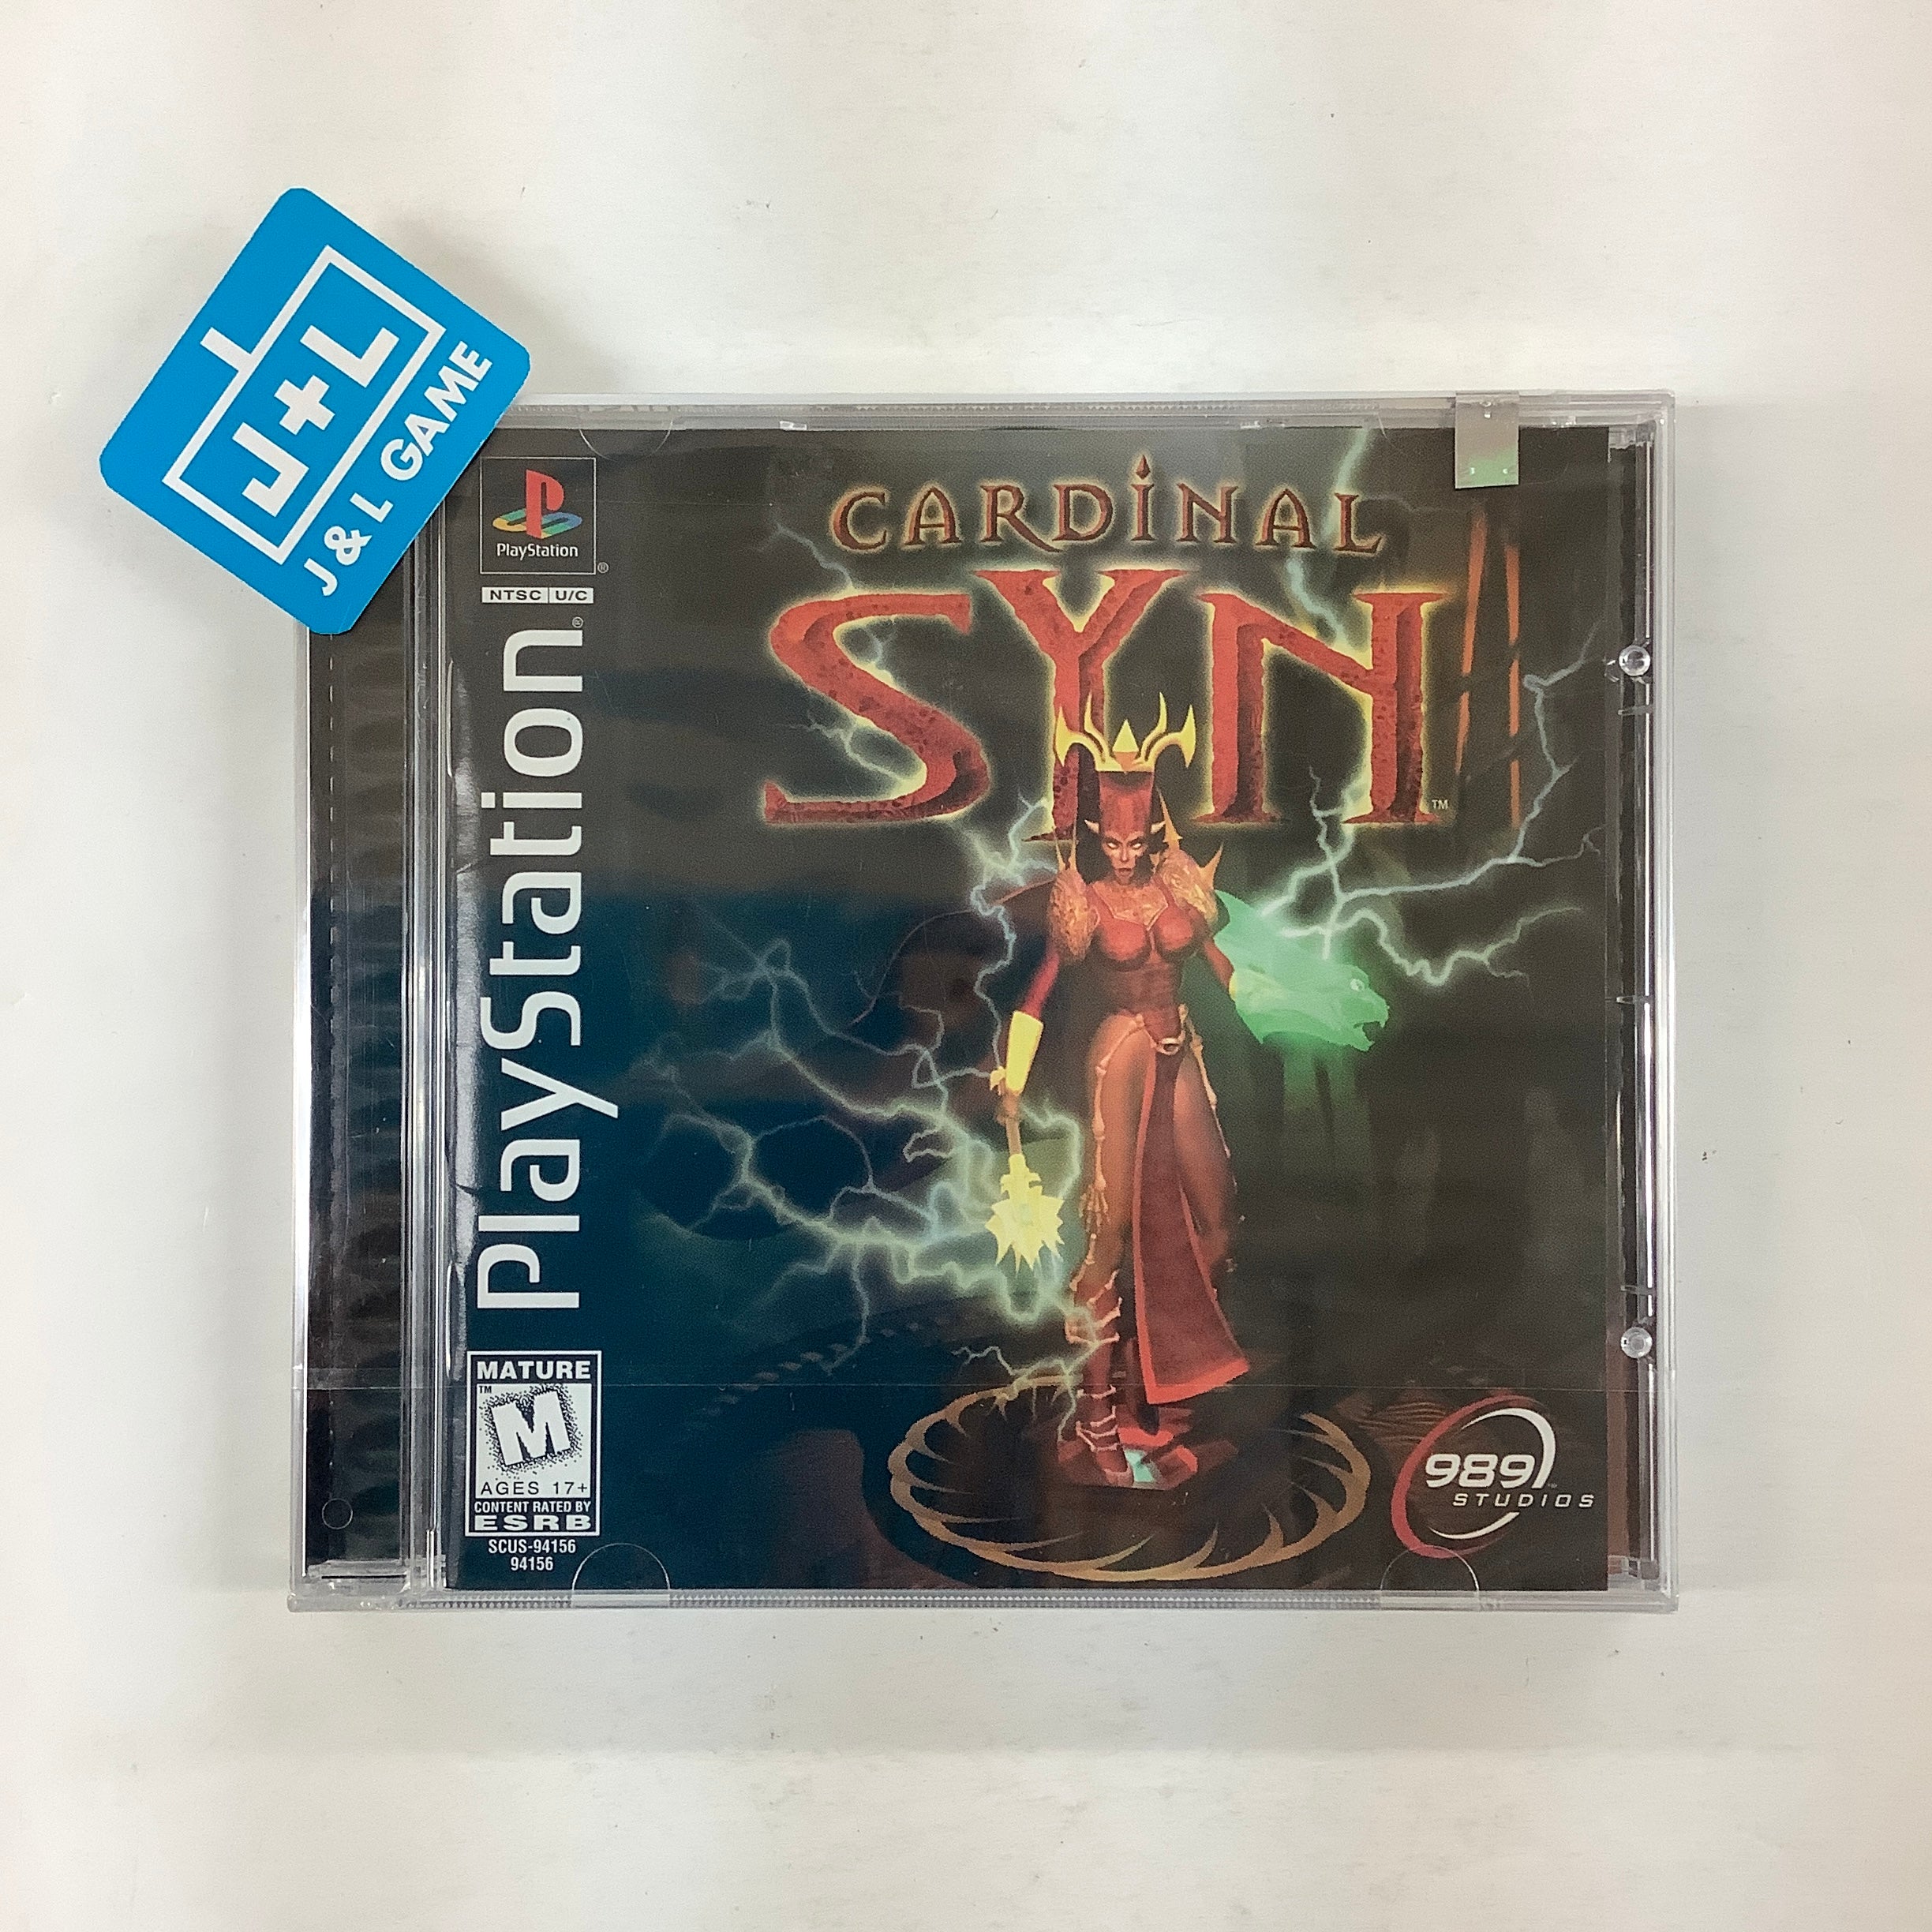 Cardinal Syn - (PS1) PlayStation 1 Video Games 989 Studios   